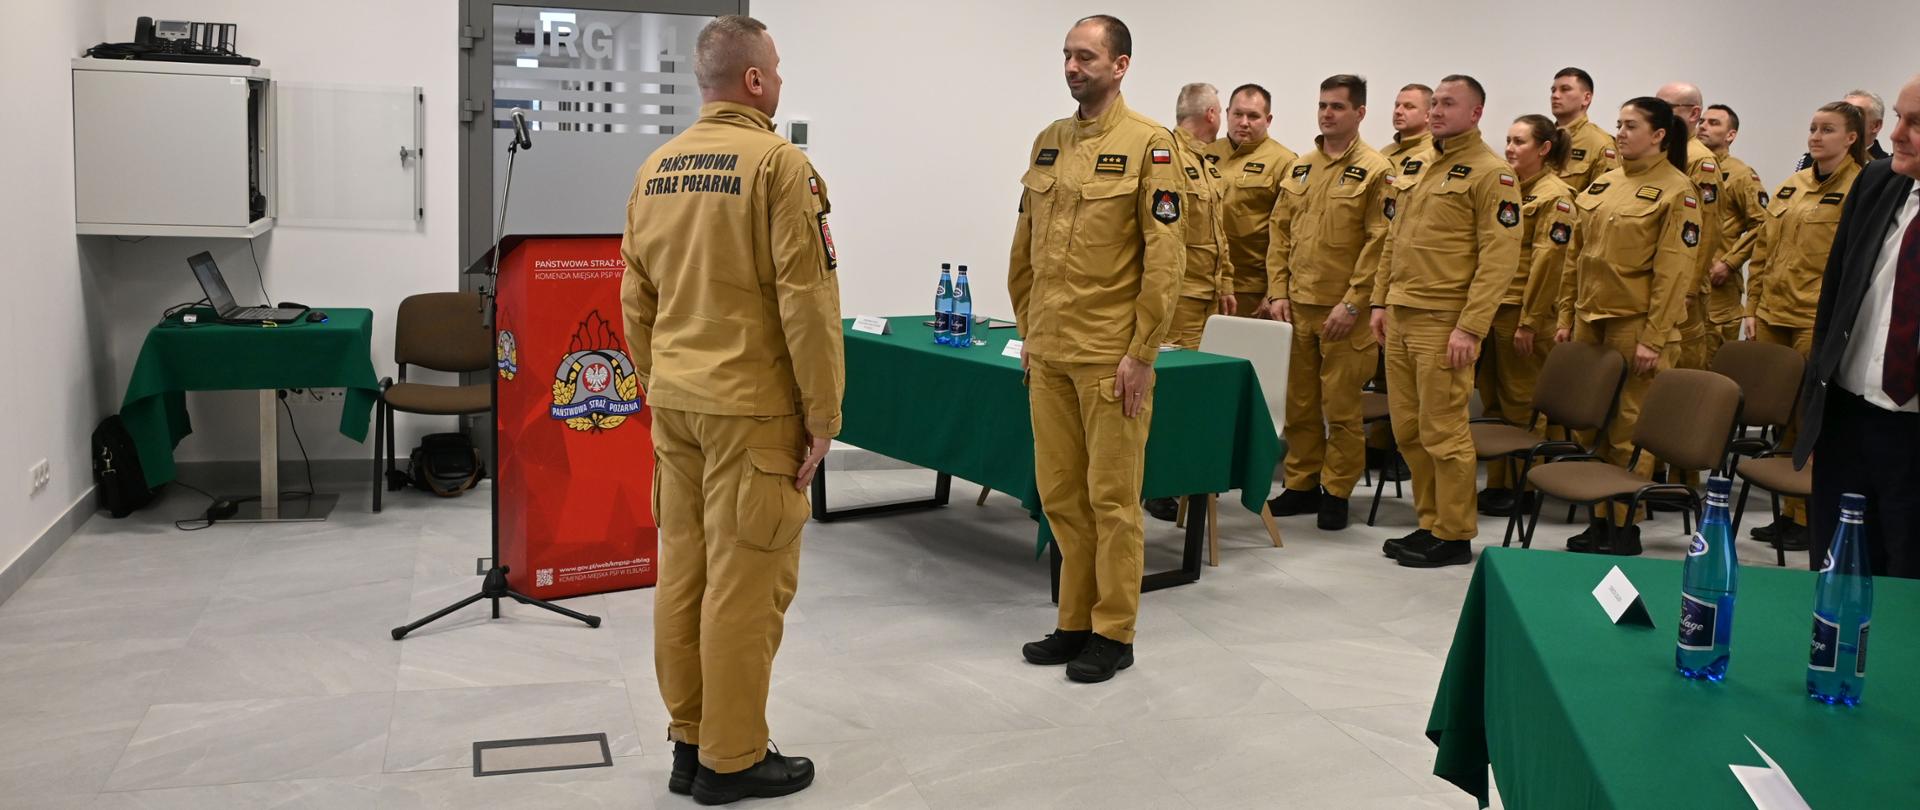 W sali szkoleniowej tutejszej komendy dowódca uroczystości składa meldunek Warmińsko Mazurskiemu komendantowi Wojewódzkiemu. W tle na baczność, stoją strażacy w mundurach